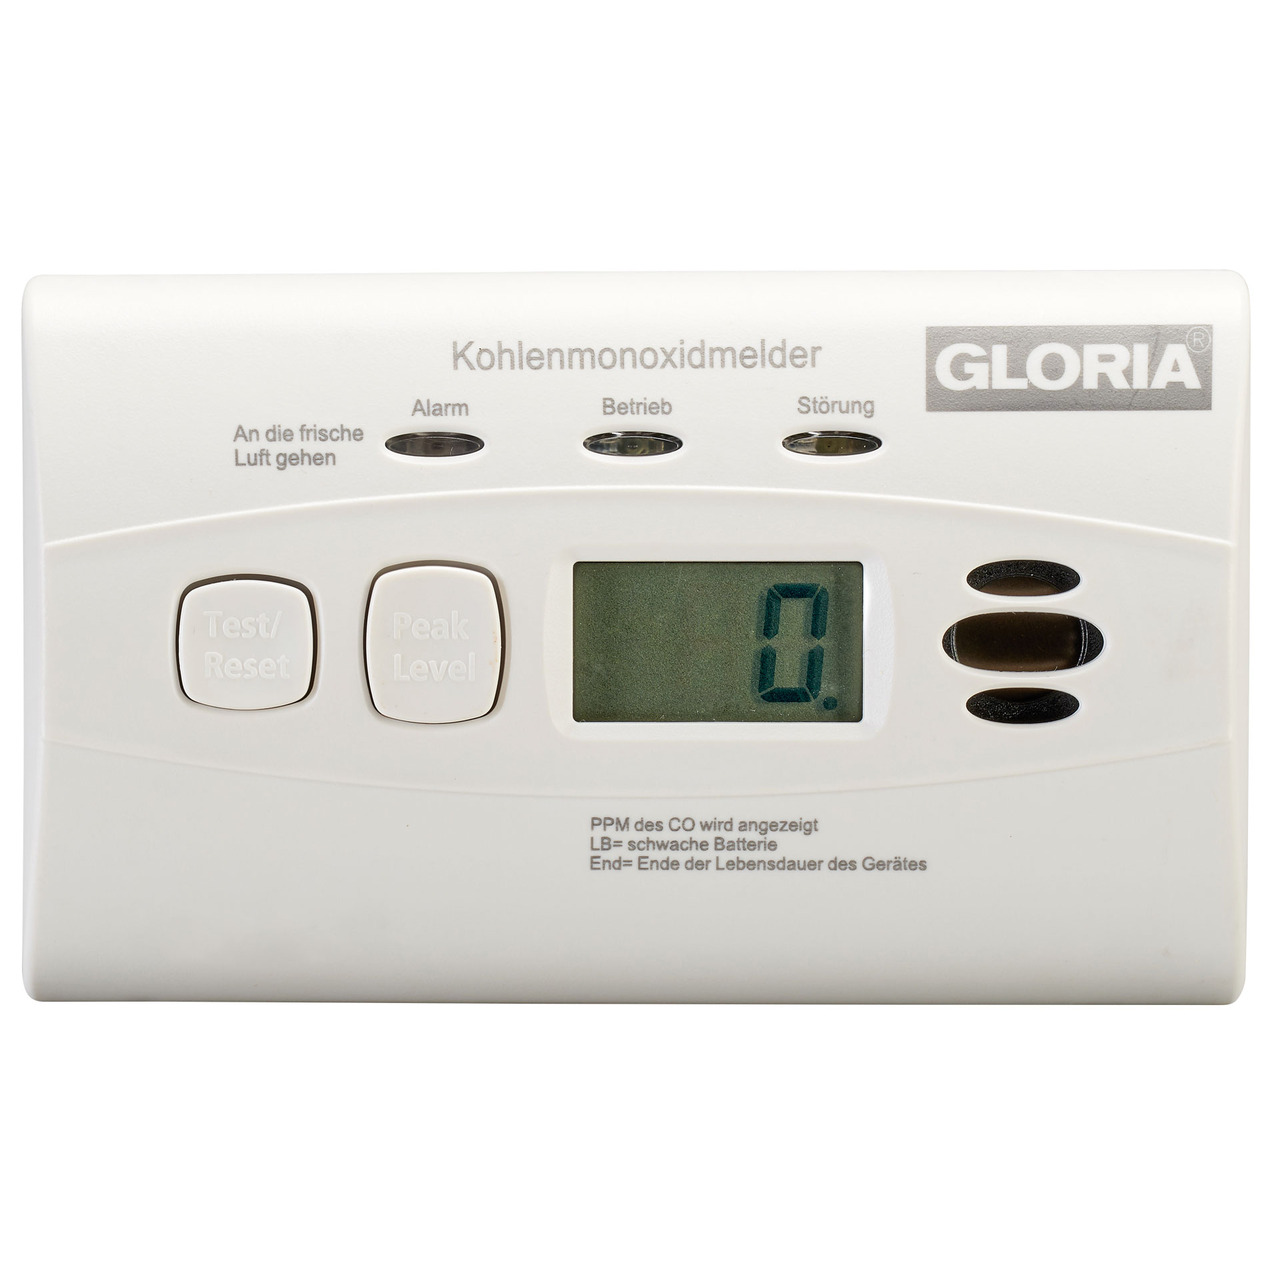 GLORIA Kohlenmonoxid-Warnmelder - CO-Melder K10D- mit Display und 10-Jahres-Batterie